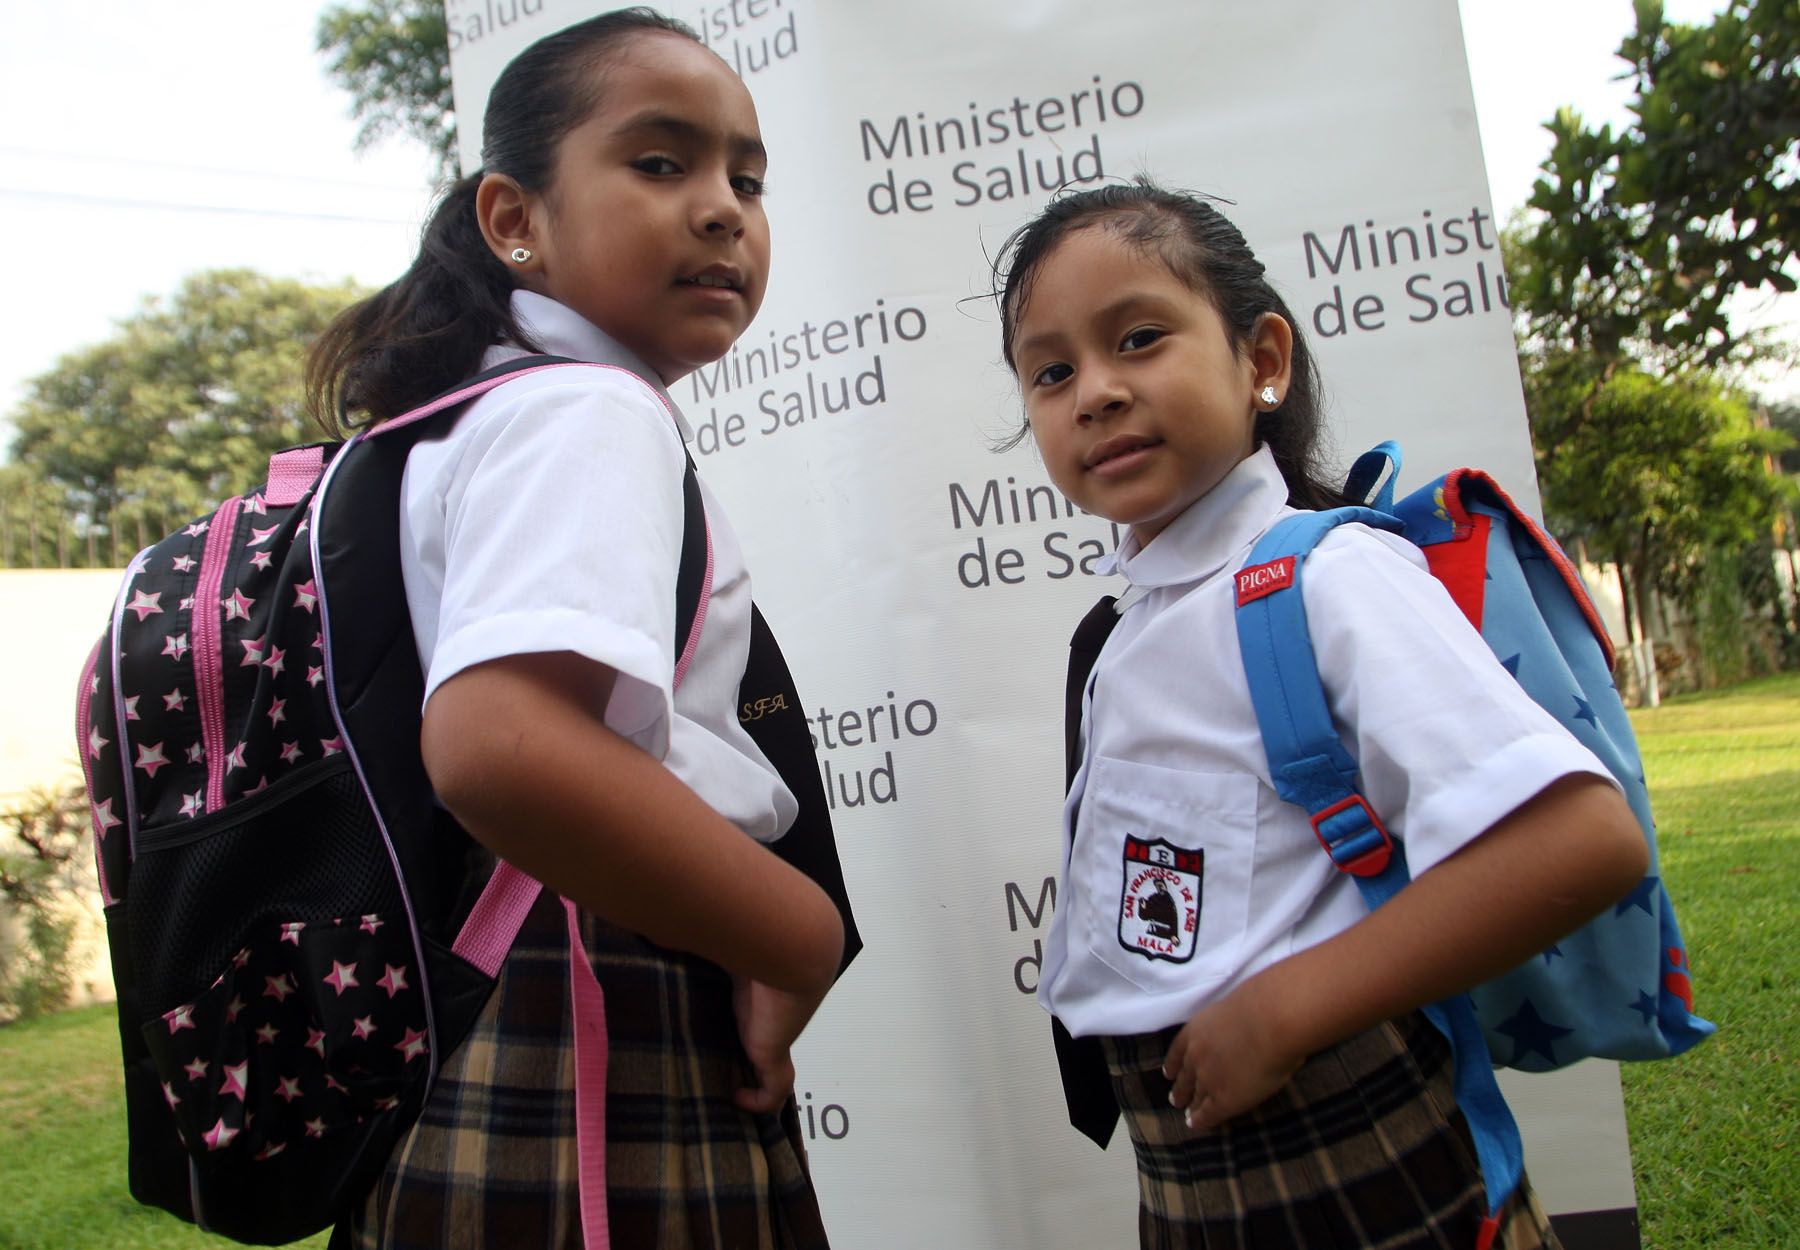 Las mochilas con tirantes son las más adecuadas para los escolares. Foto: ANDINA/archivo